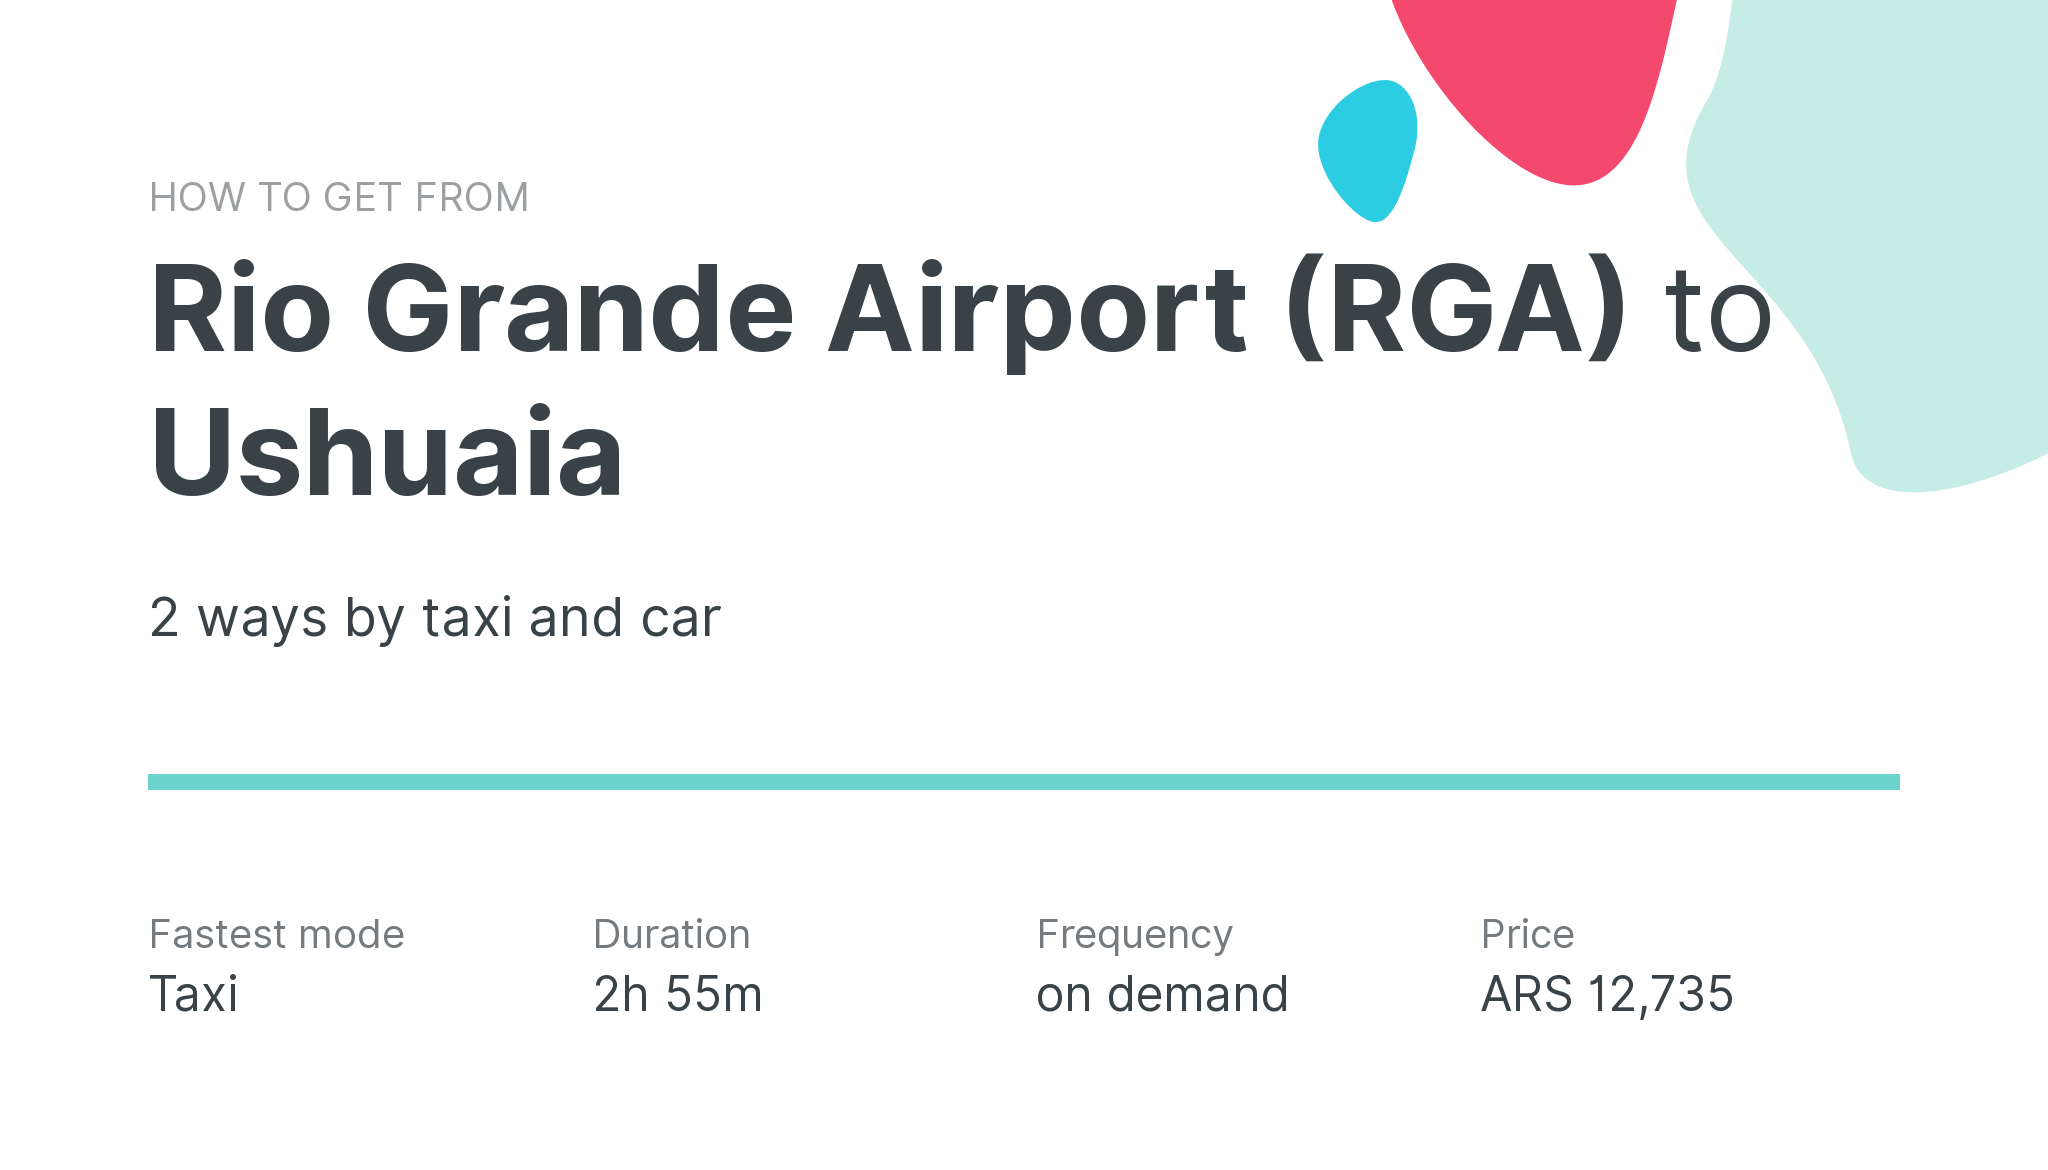 How do I get from Rio Grande Airport (RGA) to Ushuaia